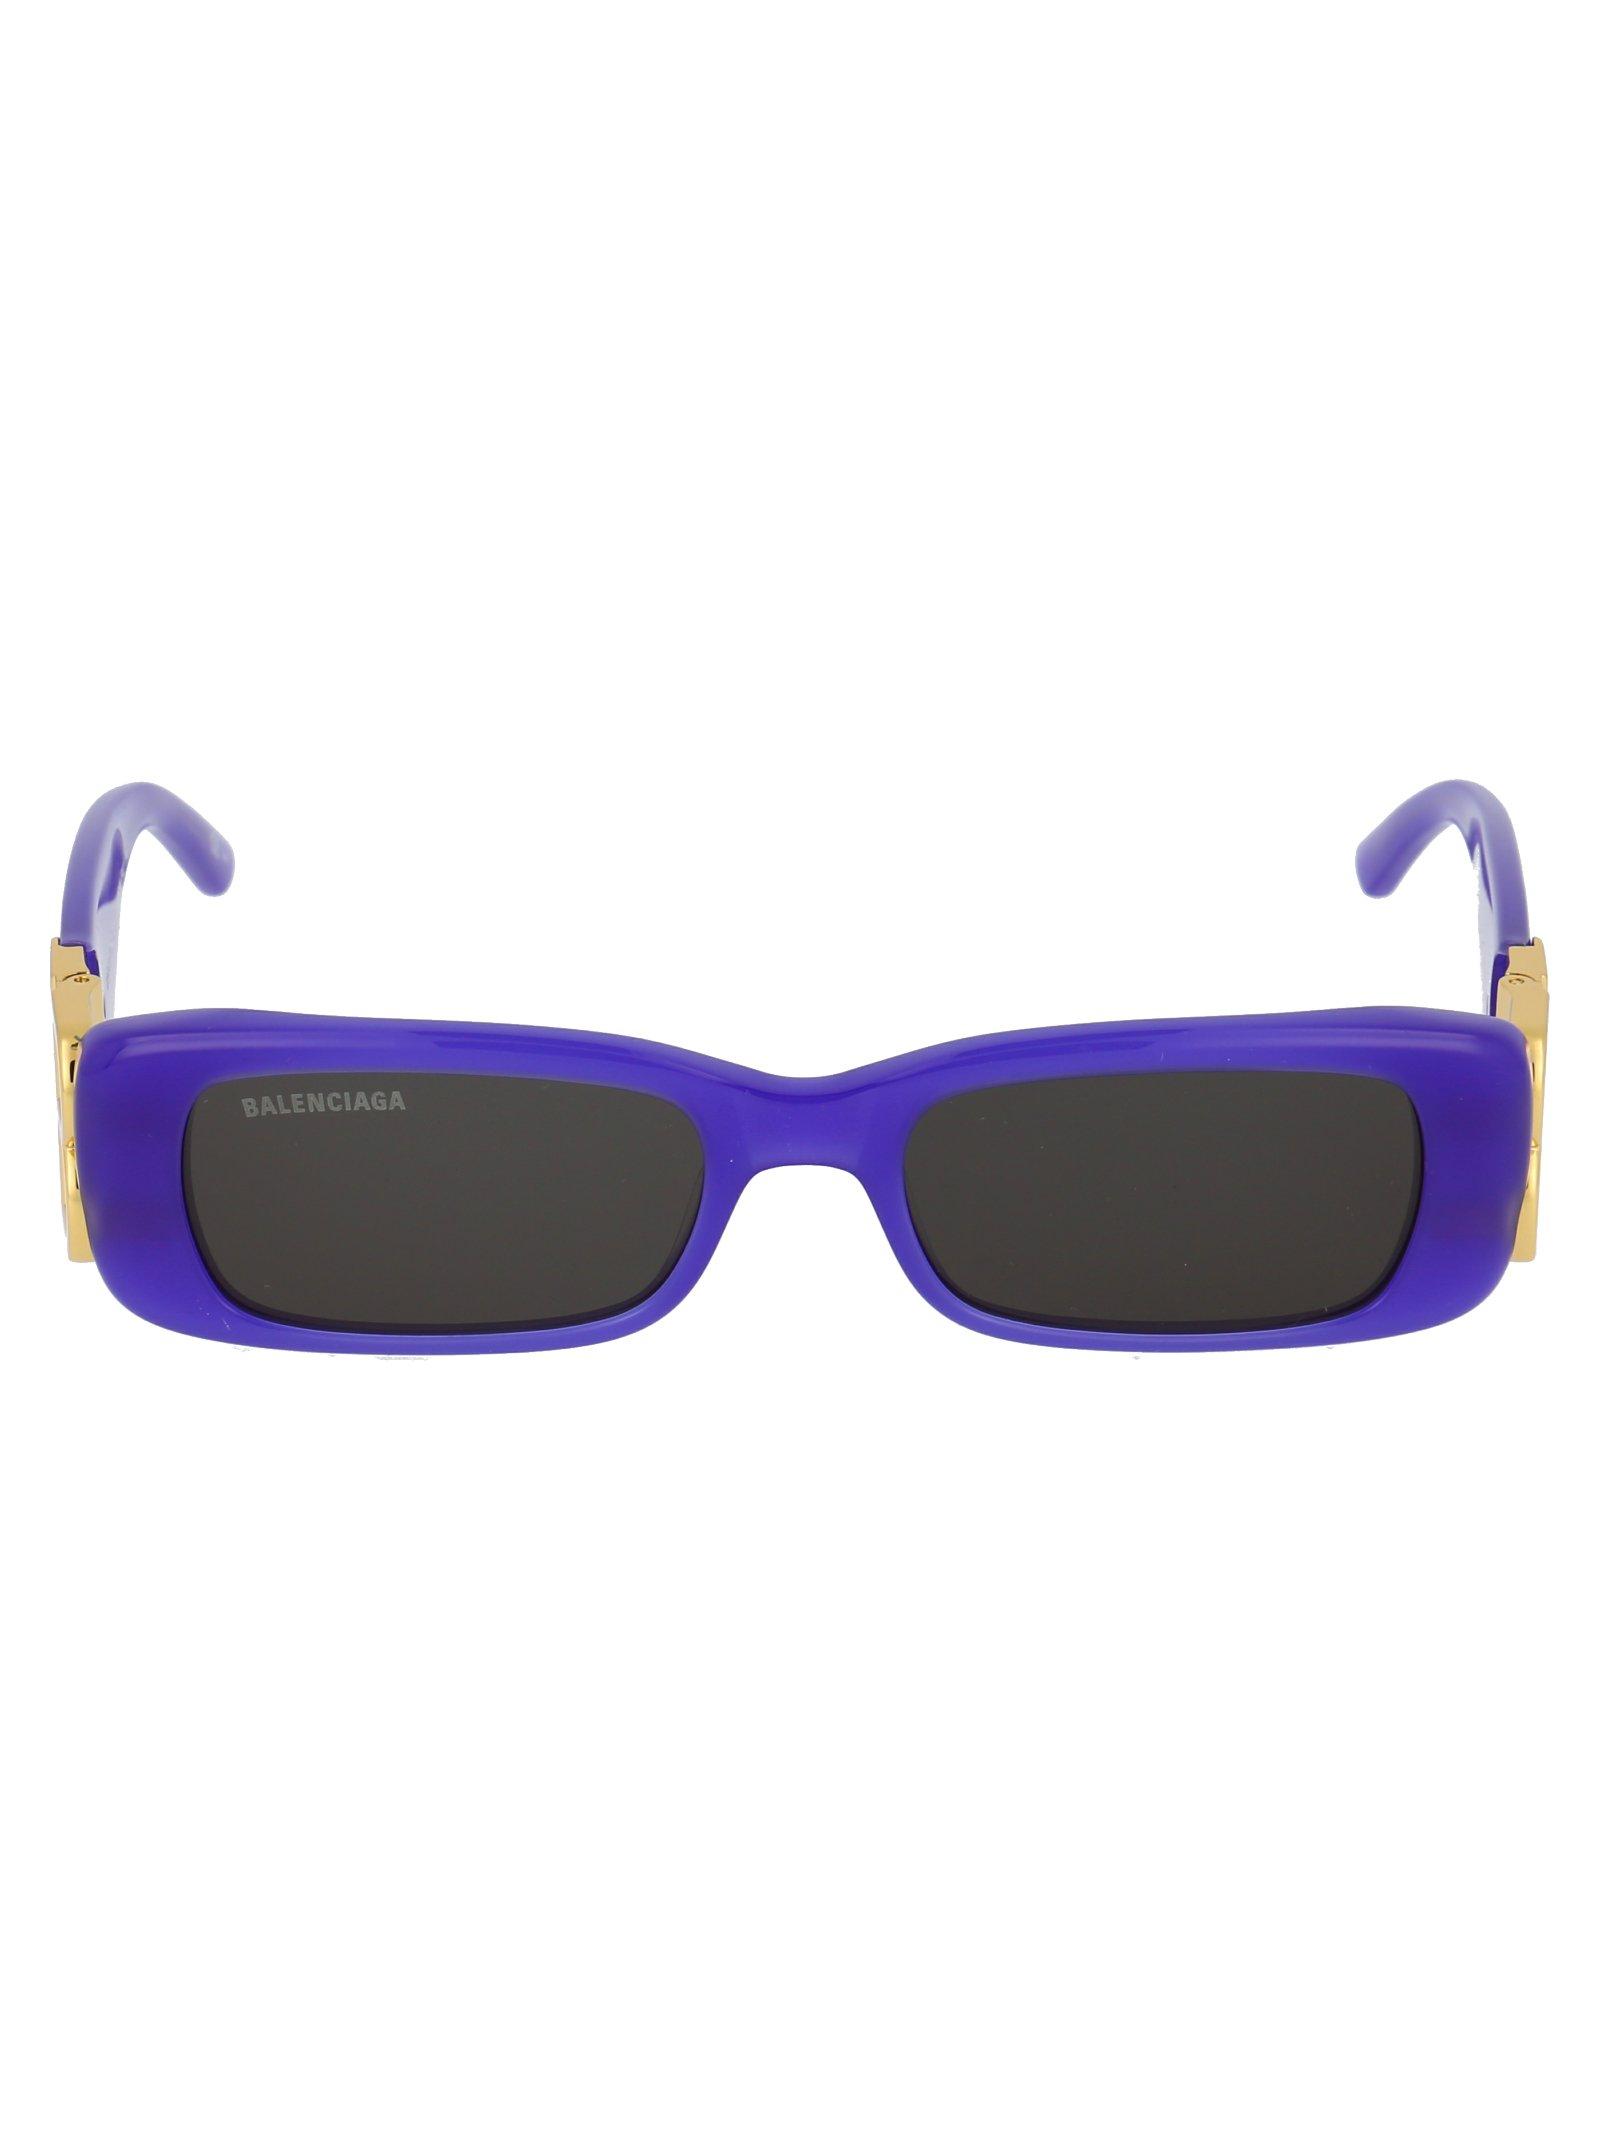 Balenciaga Dynasty Sunglasses in Purple - Lyst